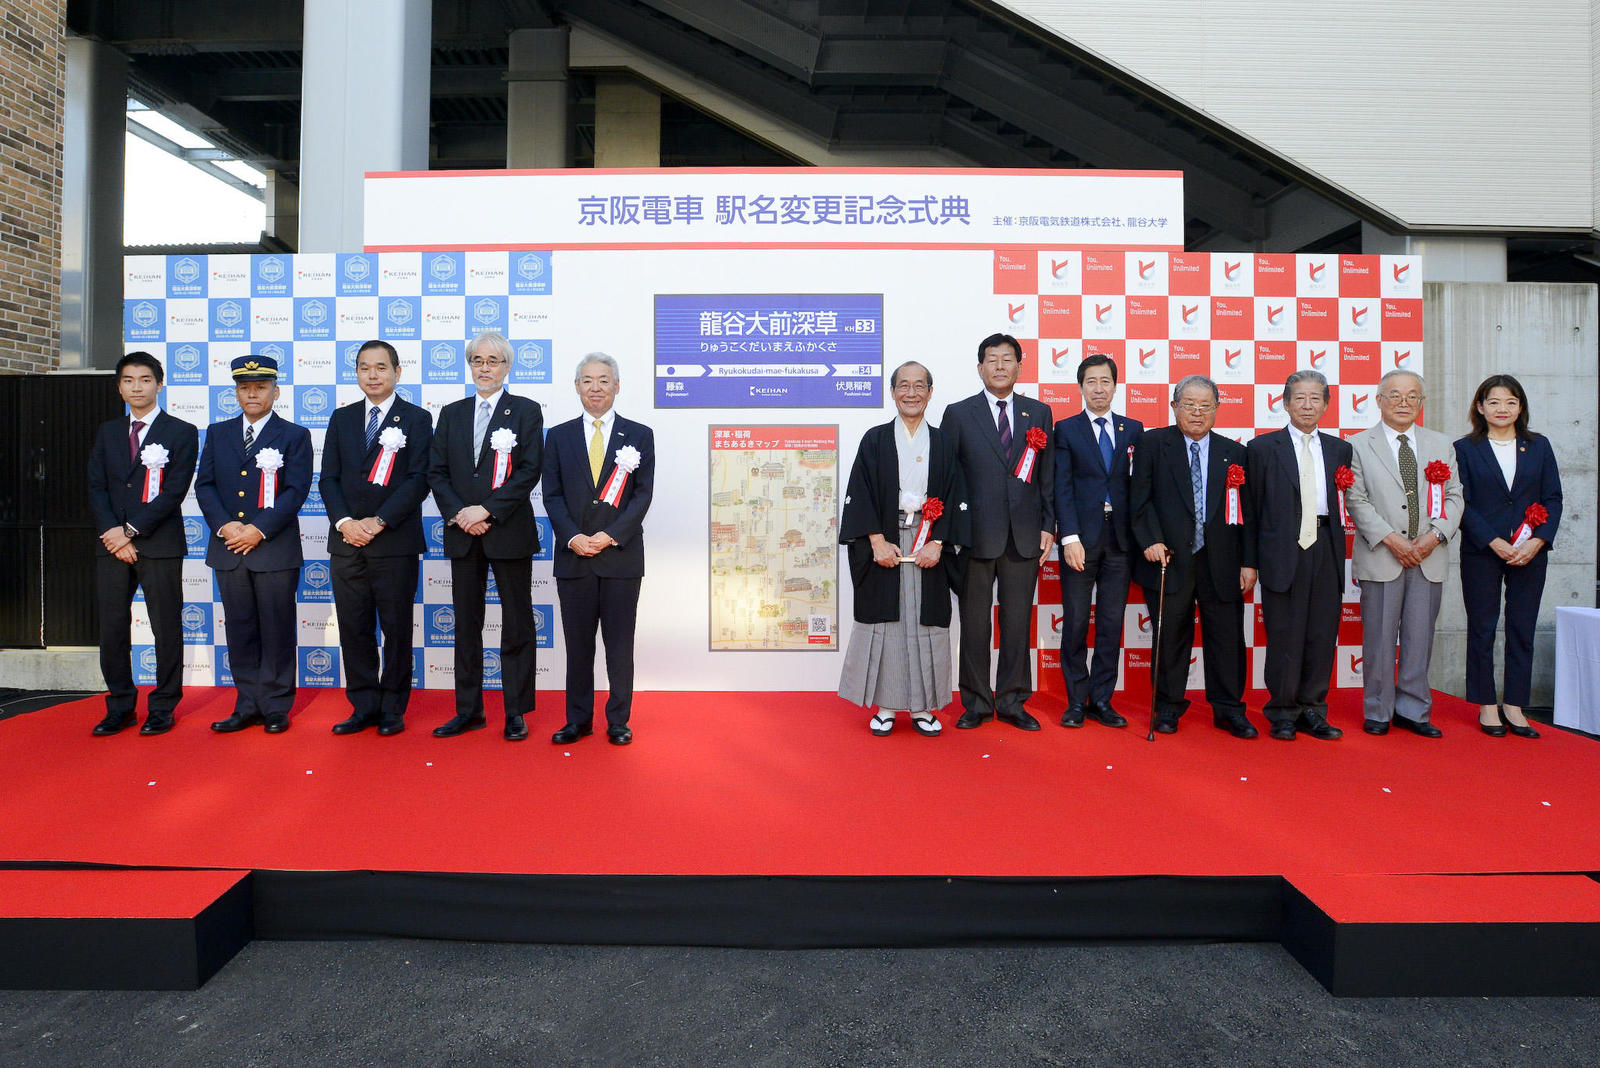 京阪電車「龍谷大前深草」駅誕生 記念式典および記念の地域交流イベントを開催